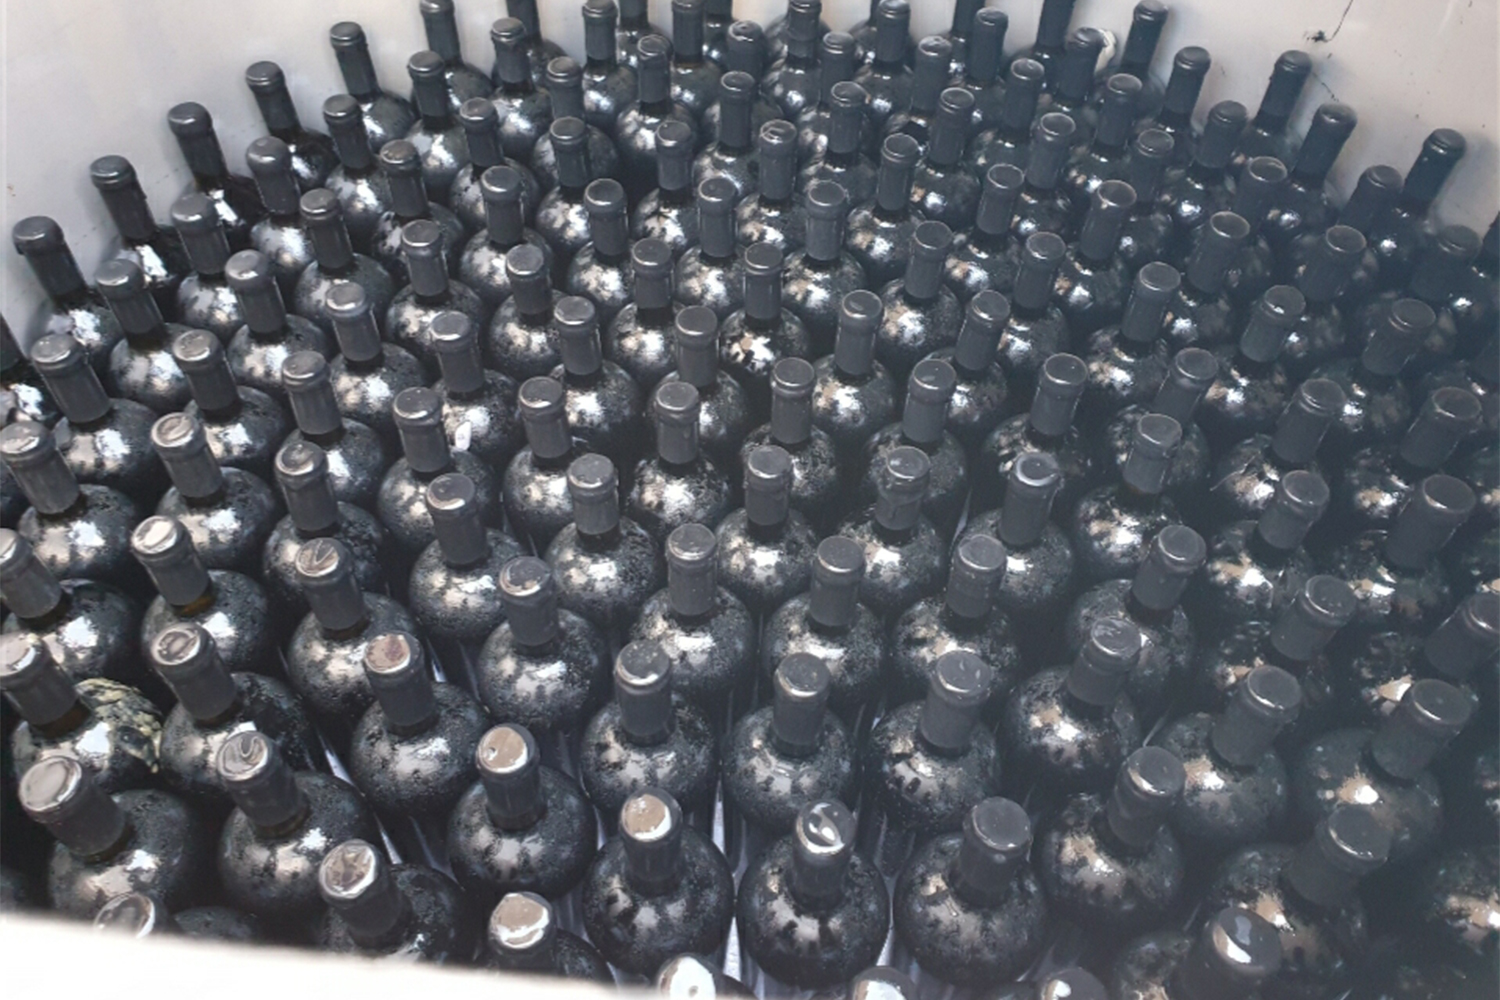 «Հալդե» գինին մեկ տարի հնեցվել է Արագած լեռան Քարի լճի հատակում